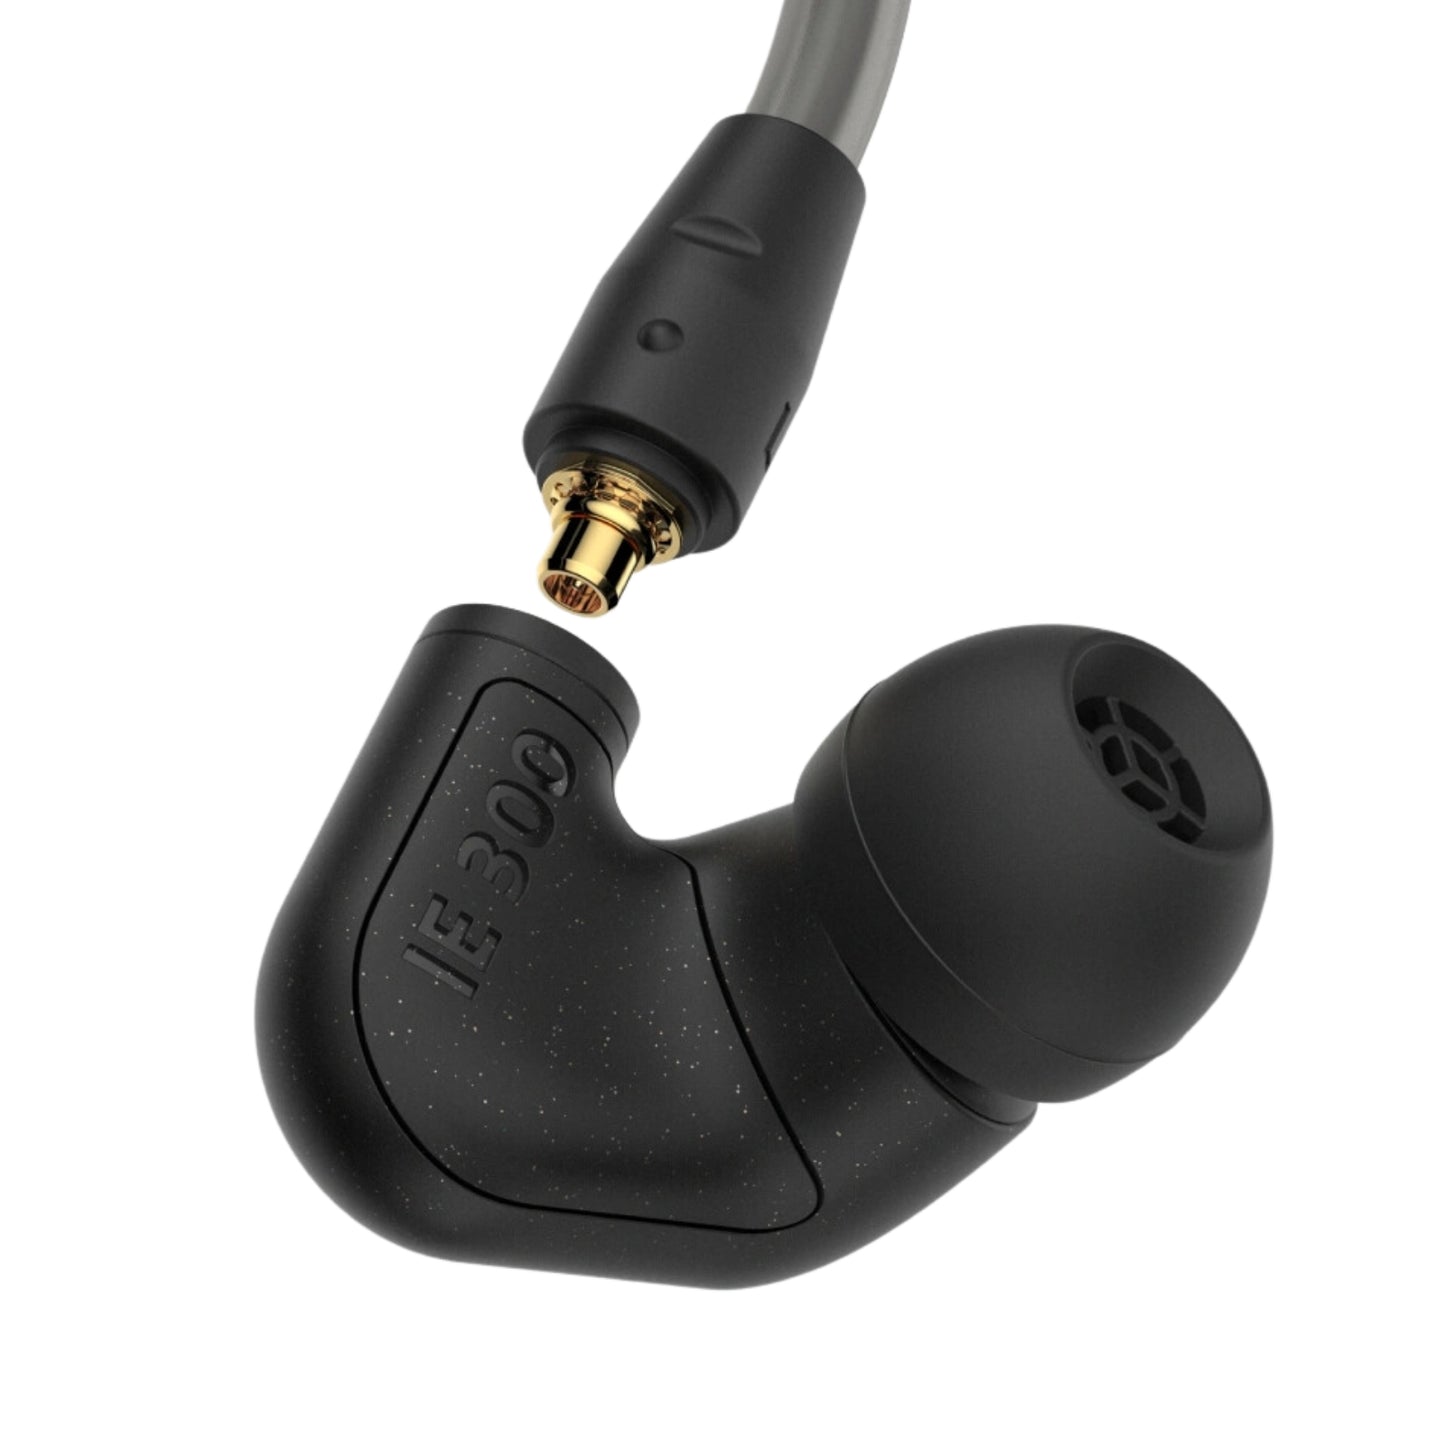 Sennheiser IE 300 In-Ear Headphones - MyMobile